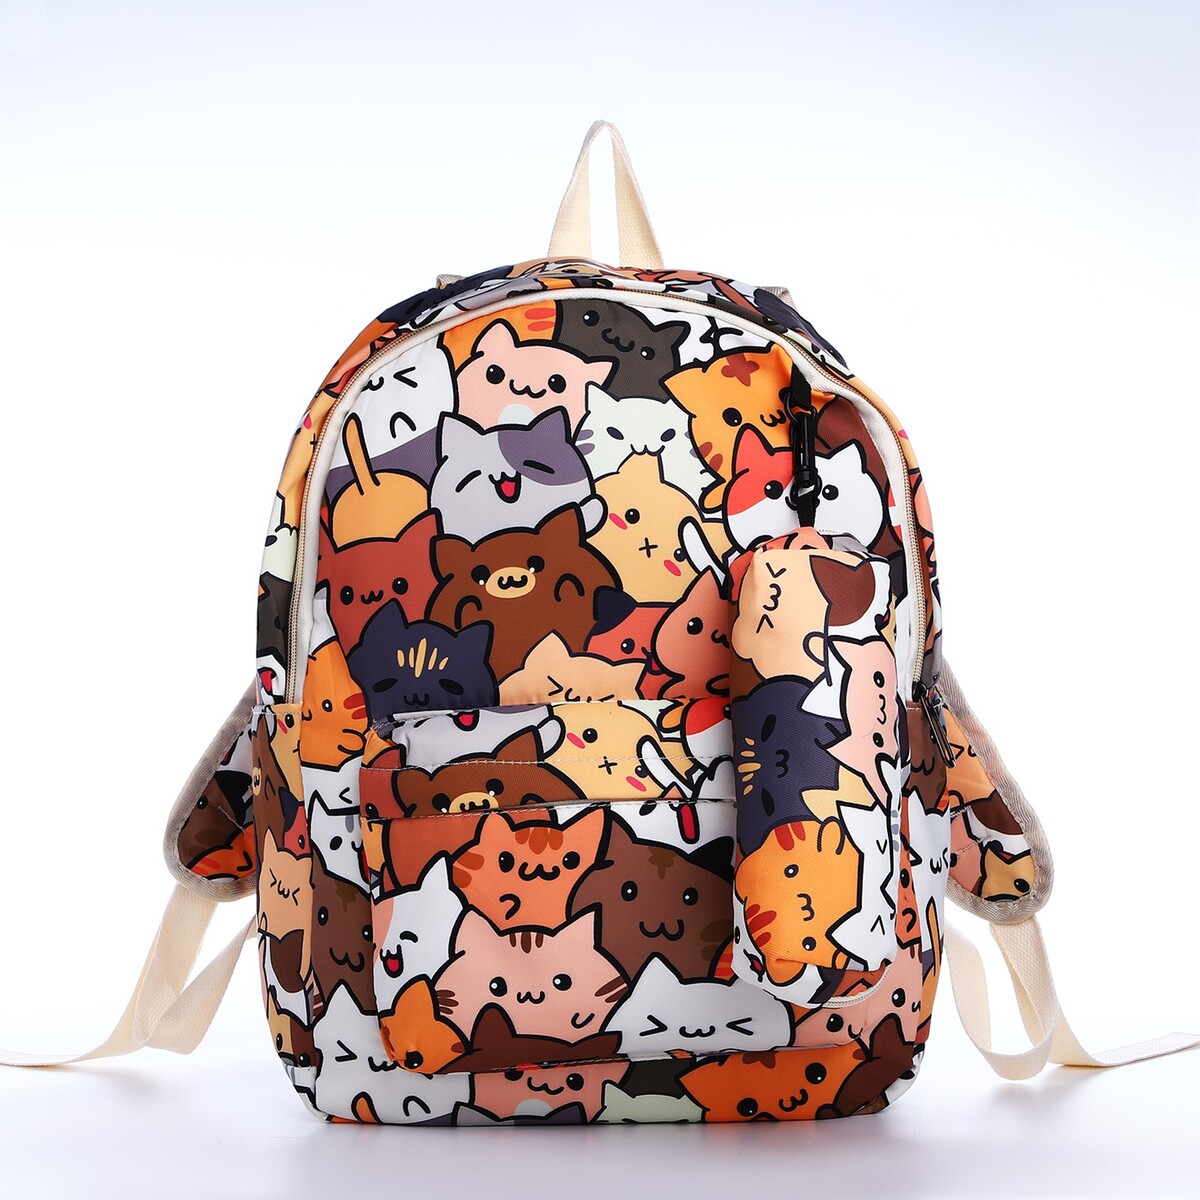 Рюкзак школьный из текстиля на молнии, 3 кармана, пенал, цвет коричневый/оранжевый школьный анатомический рюкзак grizzly ru 437 4 4 оранжевый